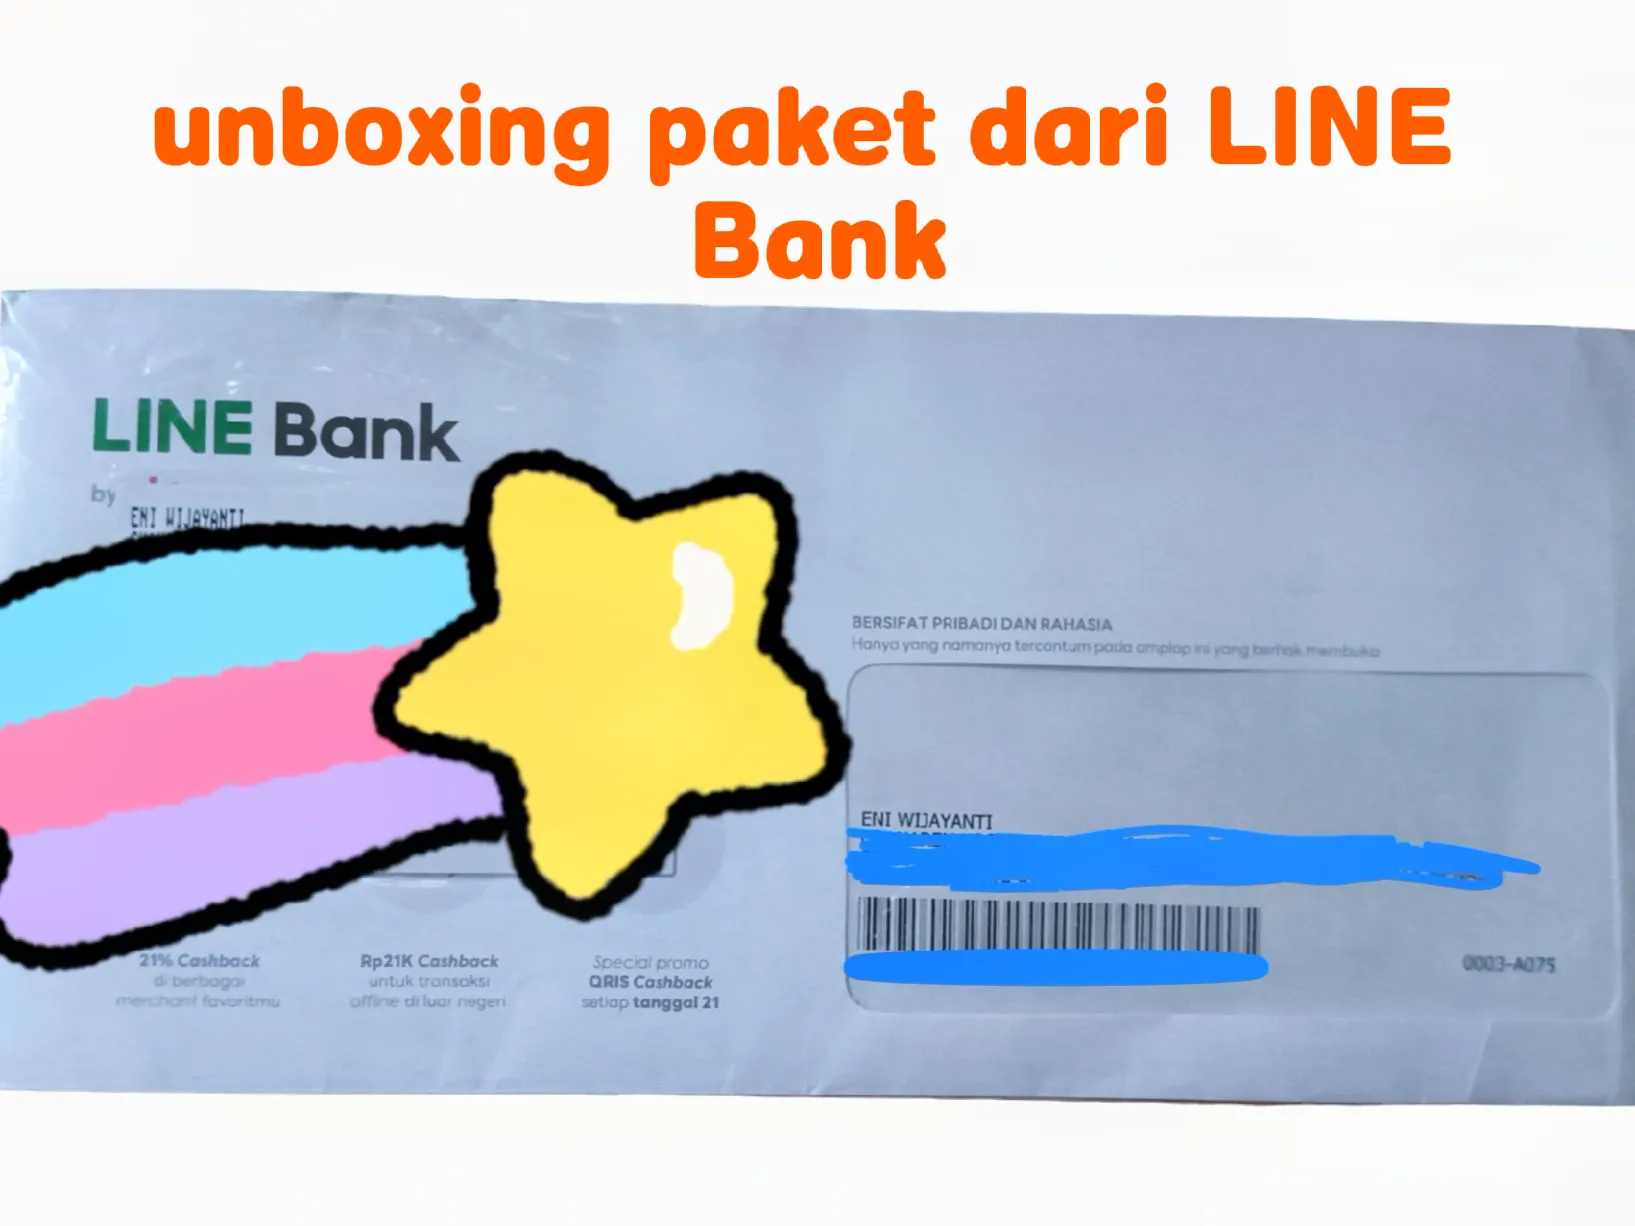 Cara Mengajukan Kartu Debit LINE Bank with BT21 Buat Rekening Berstatus  Non-Aktif